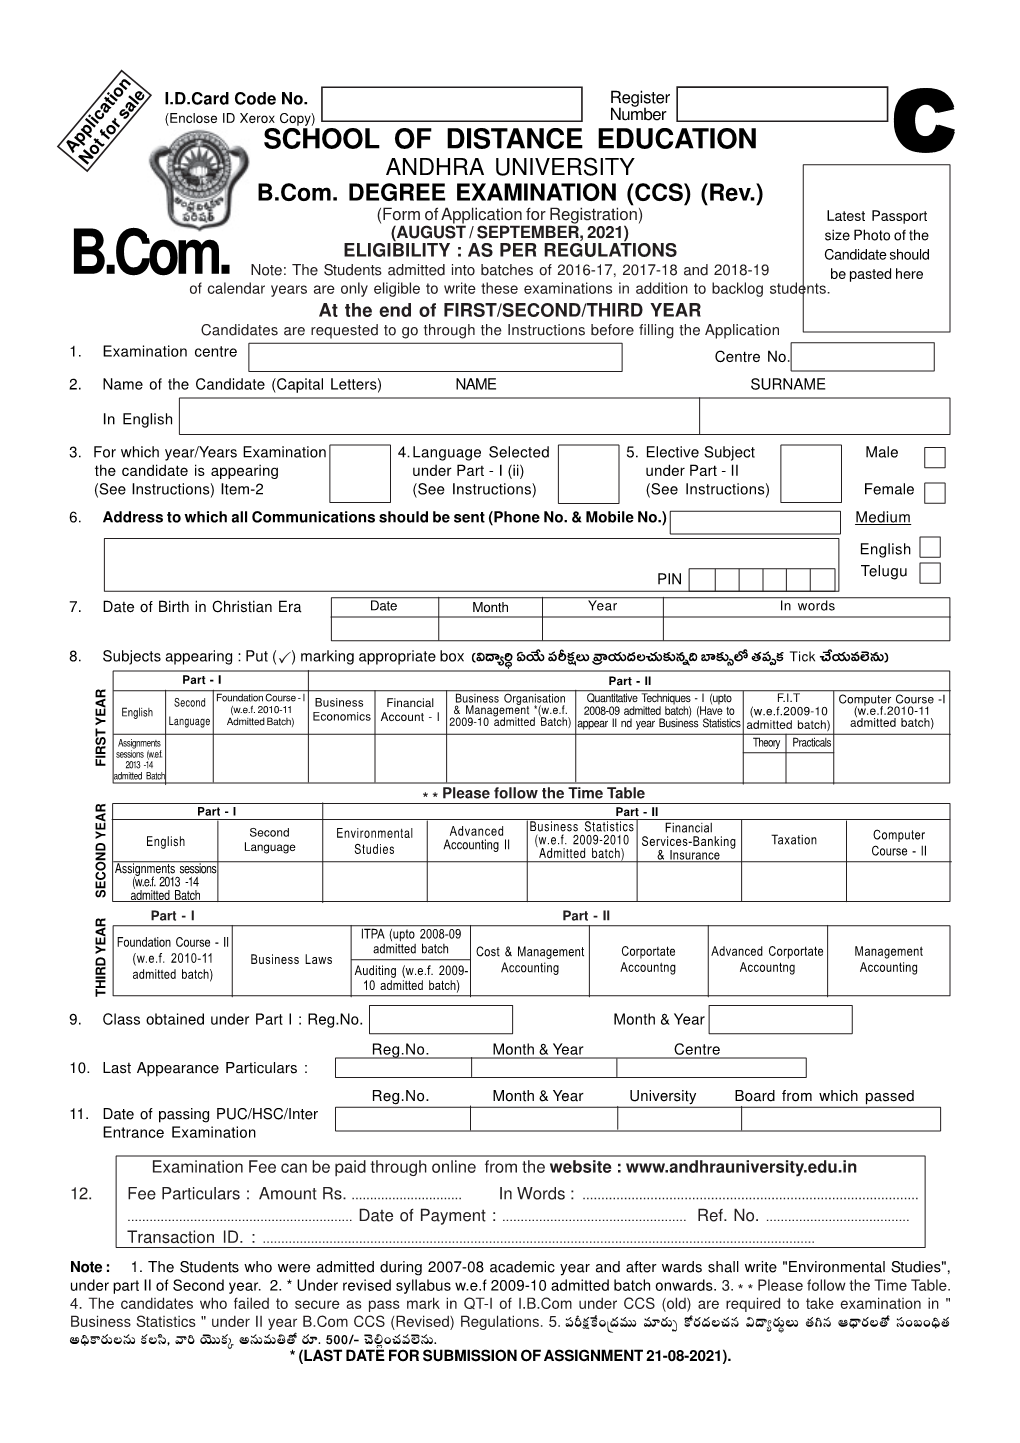 Form of Application for B.Com. DEGREE EXAMINATION (CCS)